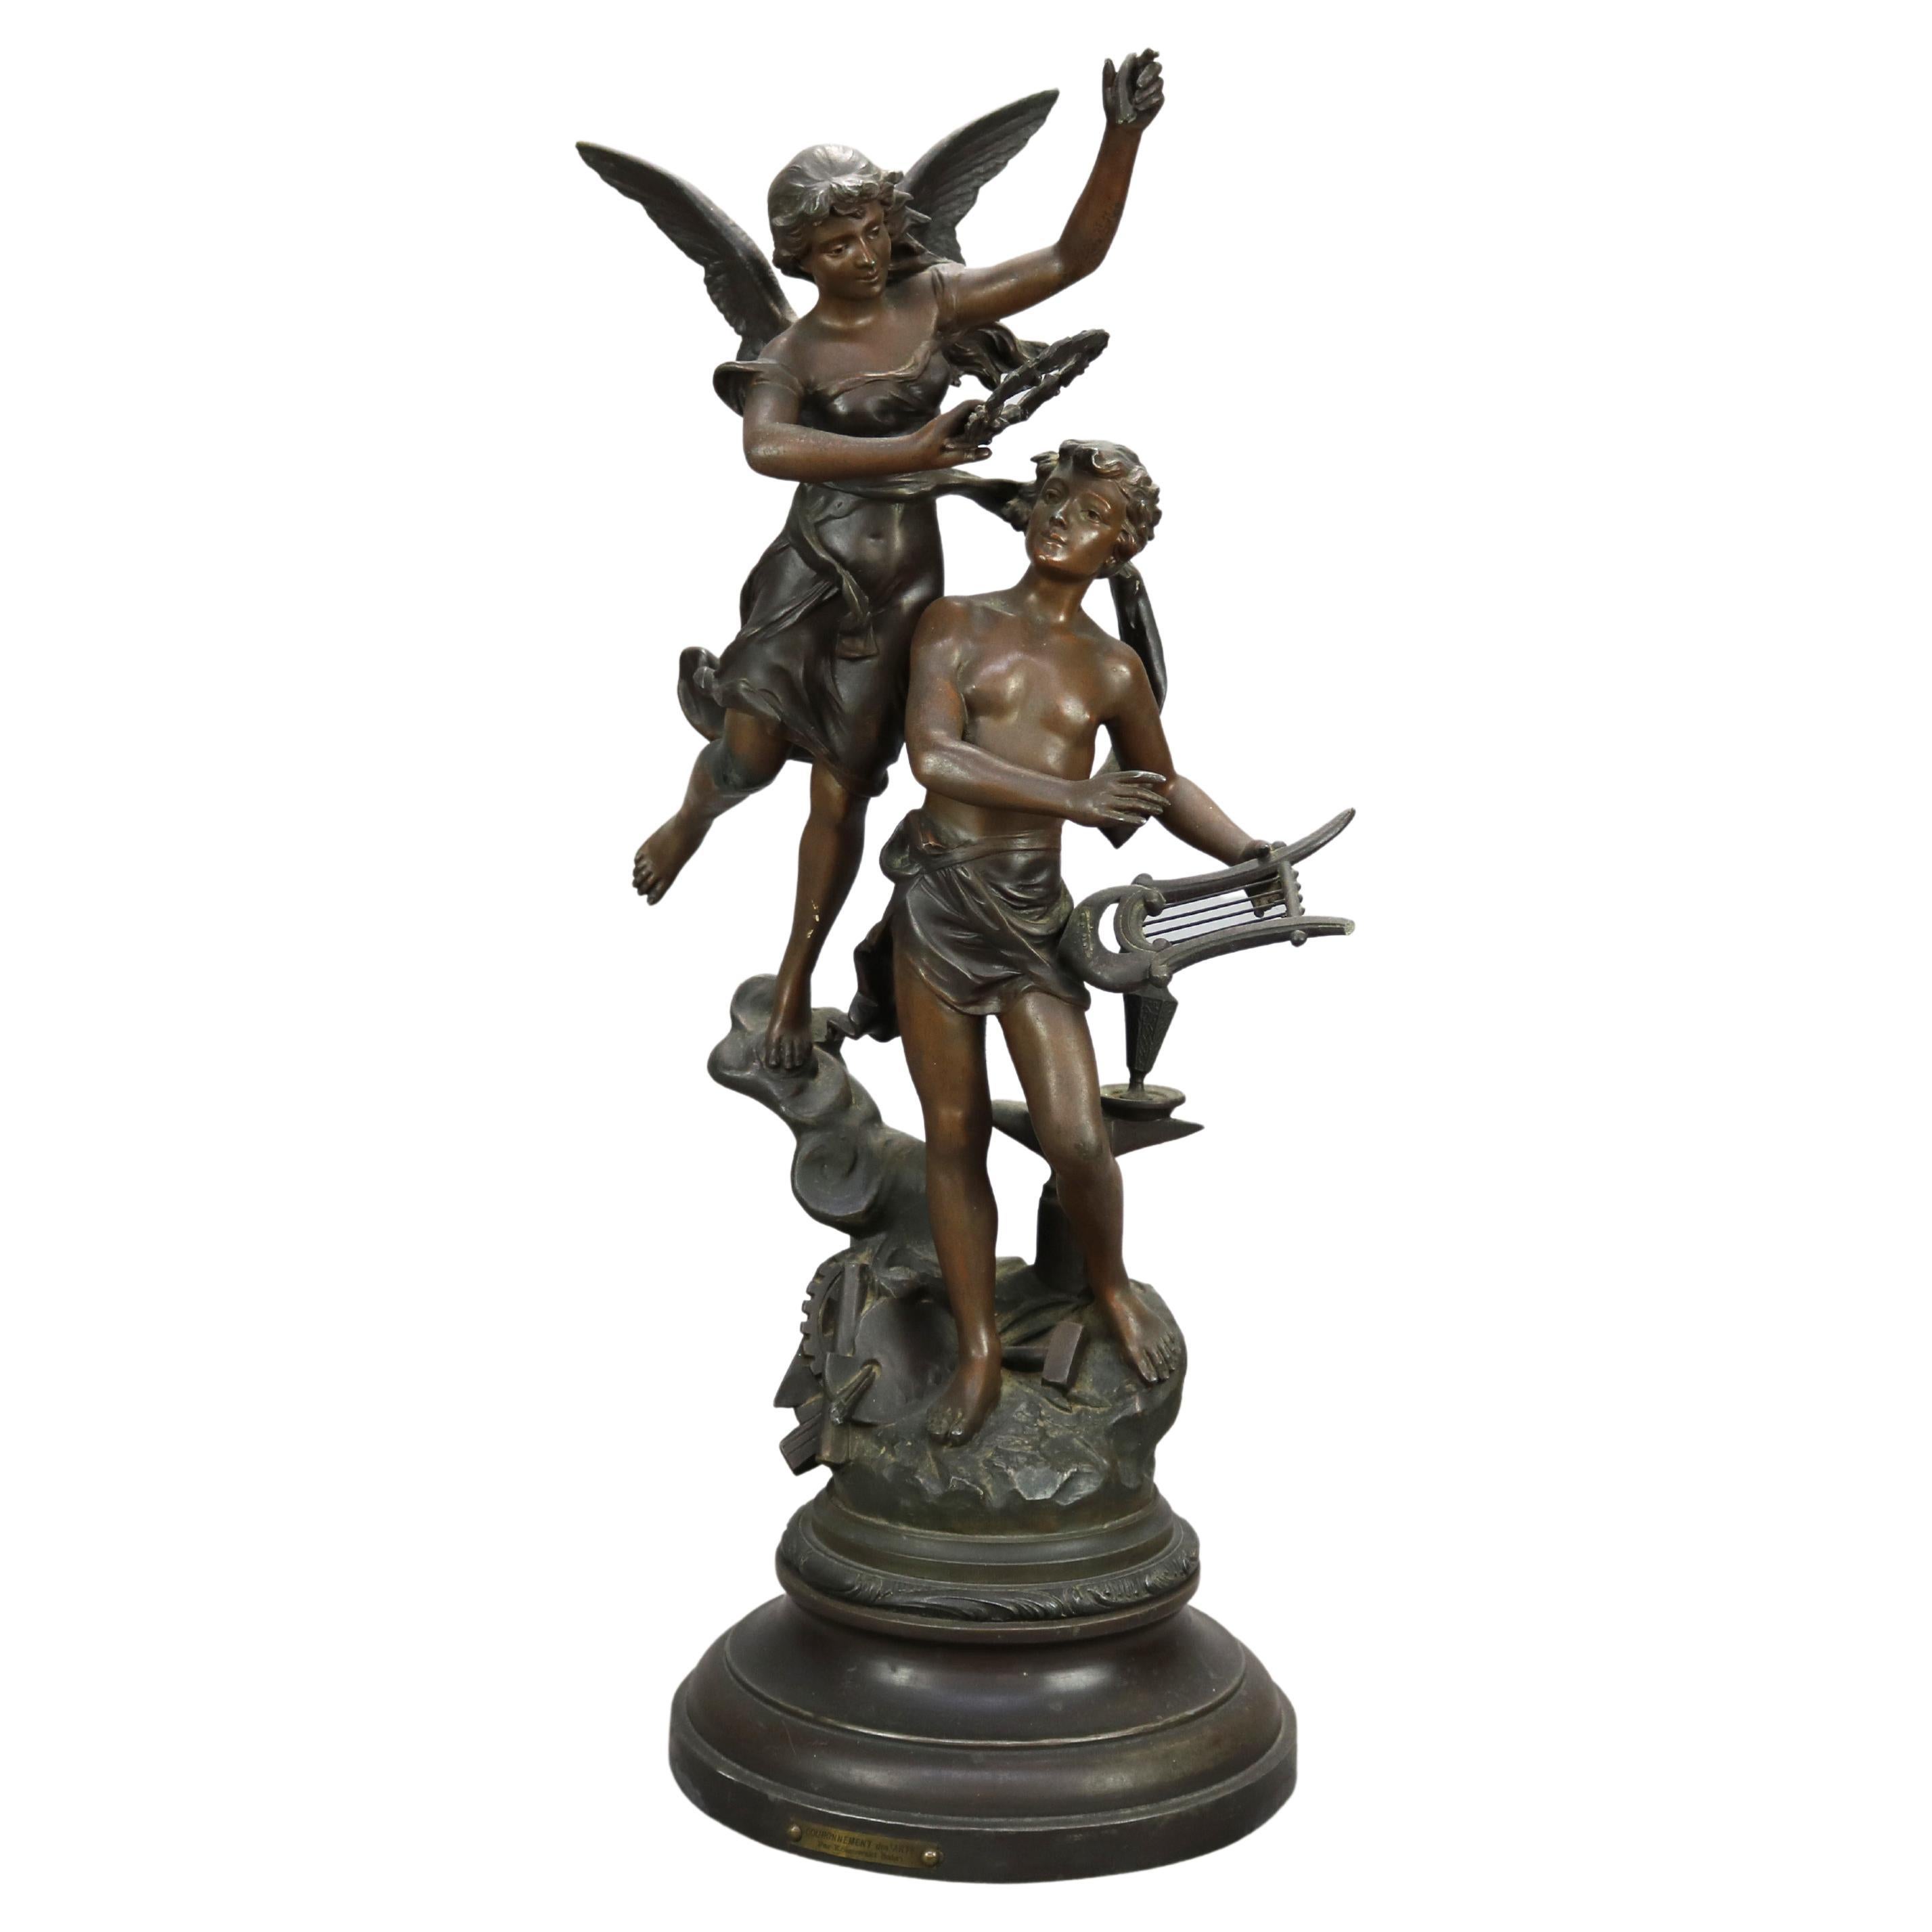 Antique French Kossowski Bronzed Metal Sculpture “Couronnement des Arts”, c1890